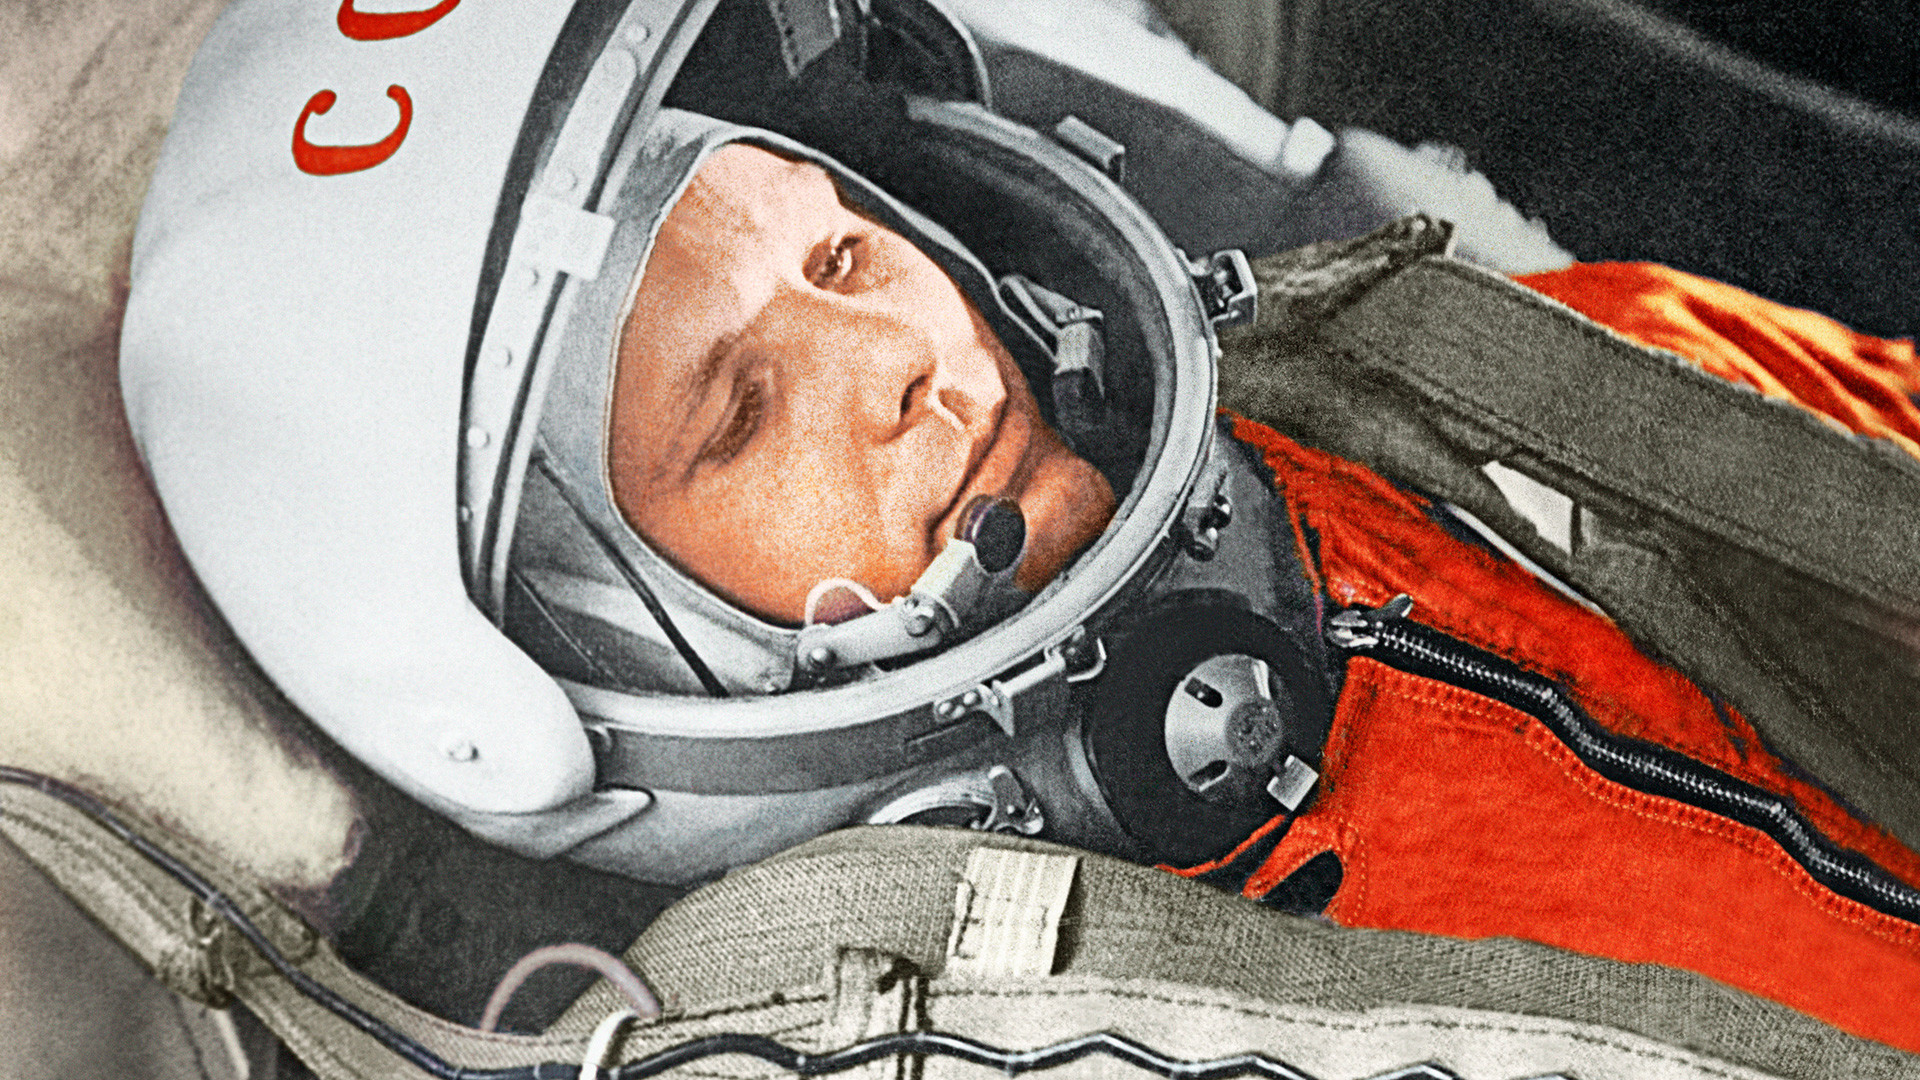 ガガーリンの宇宙飛行についての知られざる10の事実 - ロシア・ビヨンド